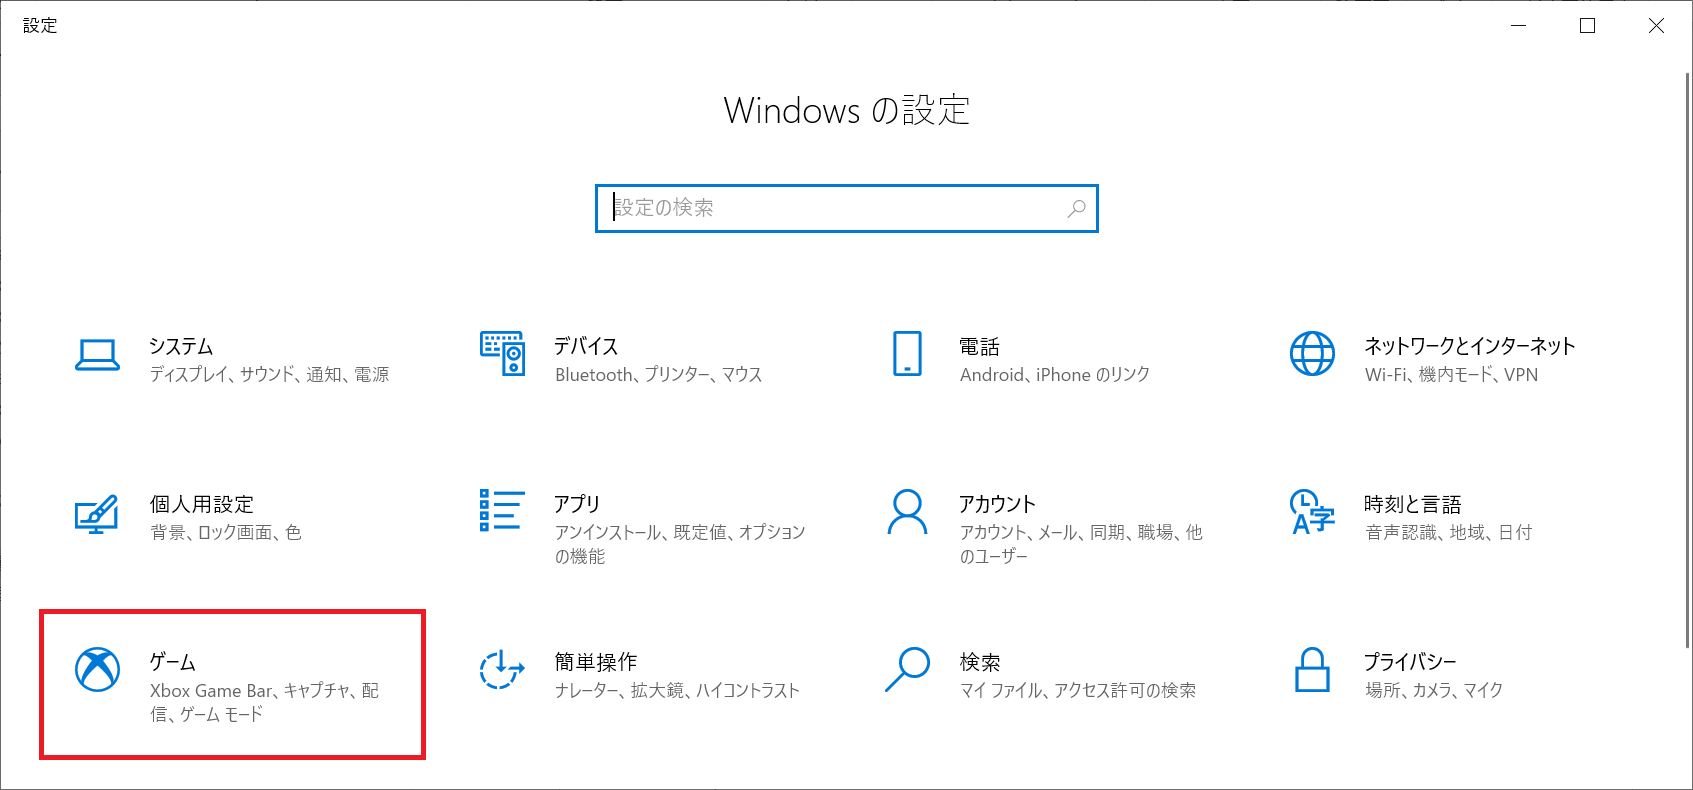 Windows10:表示された「Windowsの設定」画面から「ゲーム」を選択